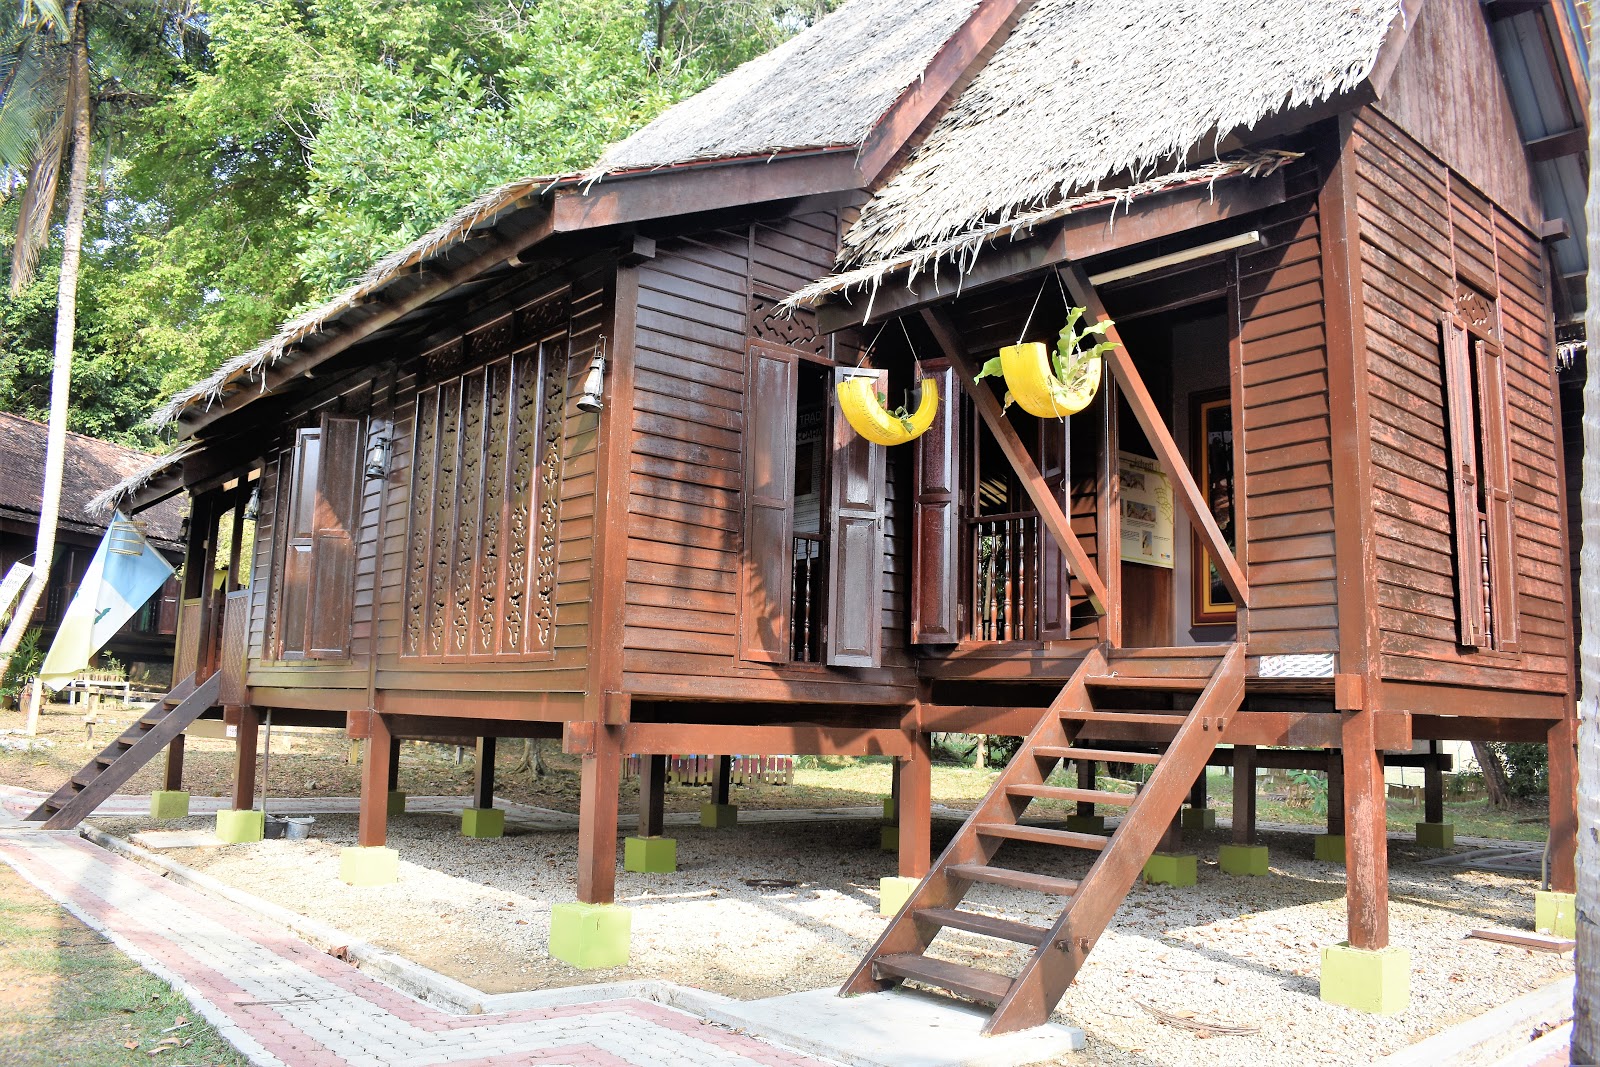 Rumah Kayu Di Kampung : Rumah kayu bentuk kubus mulai banyak di temuan